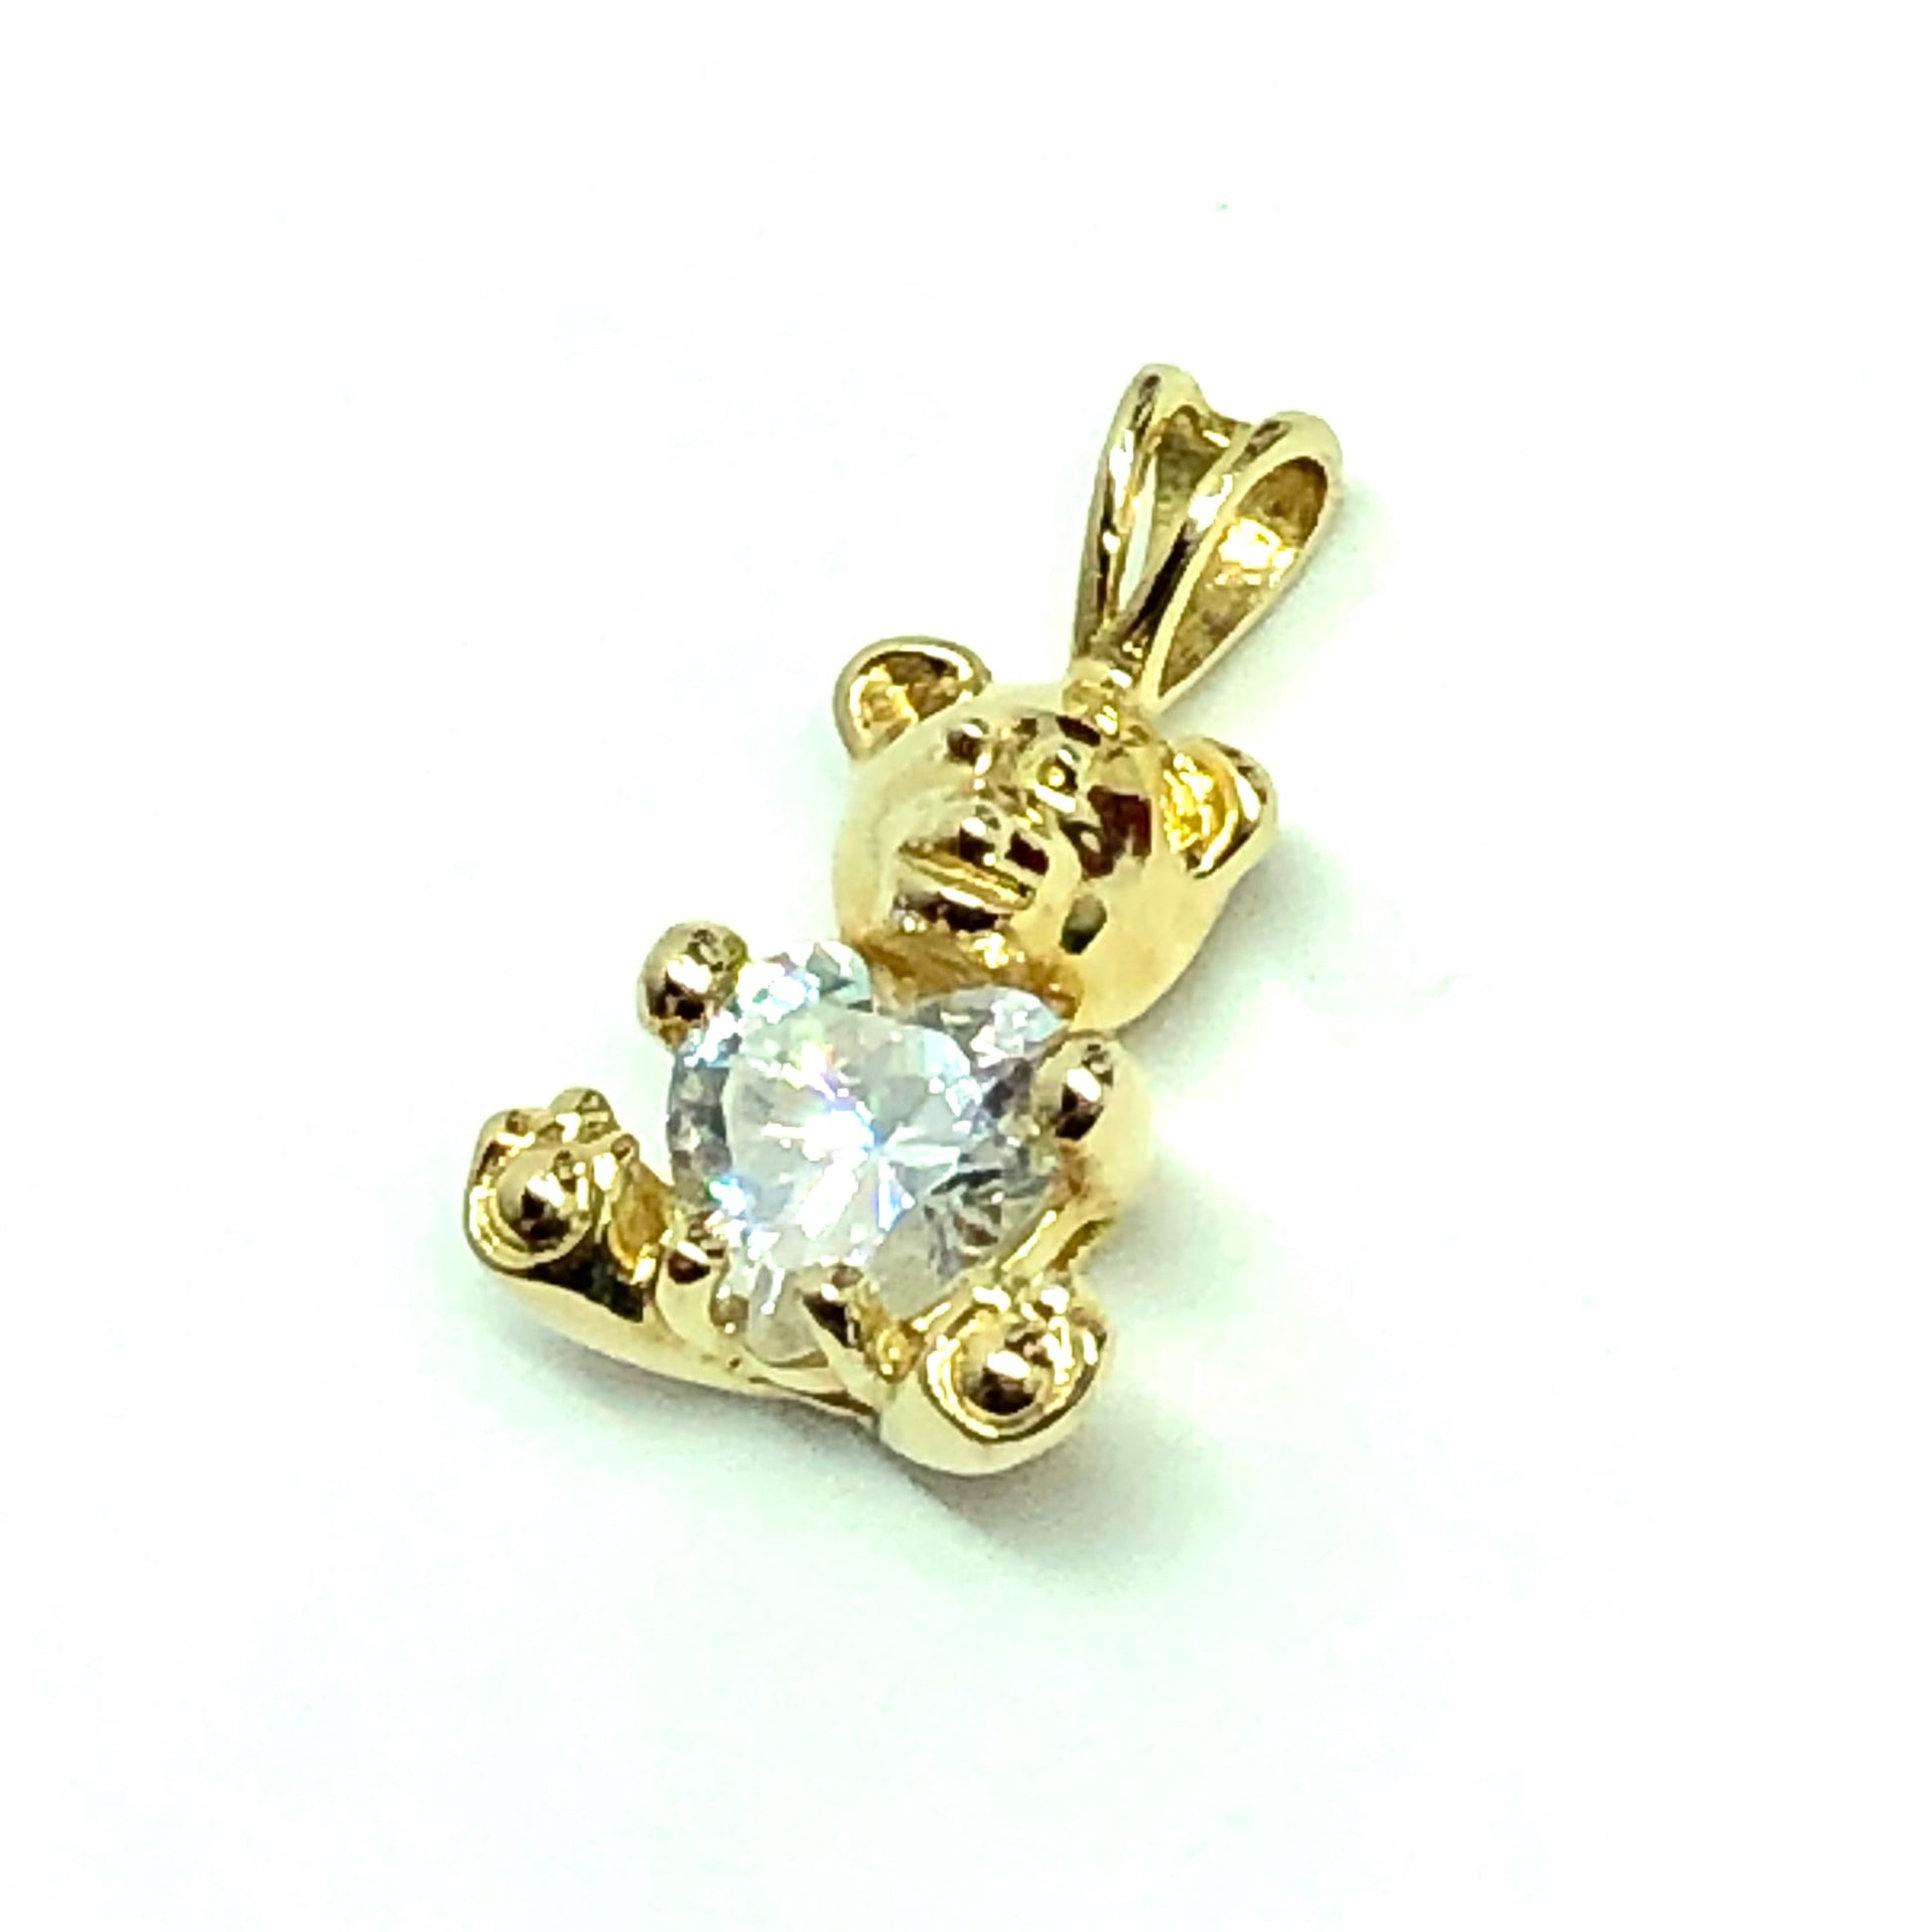 Cute Gold Sterling Silver Diamond Cz Gem Teddy Bear Pendant - Blingschlingers Jewelry